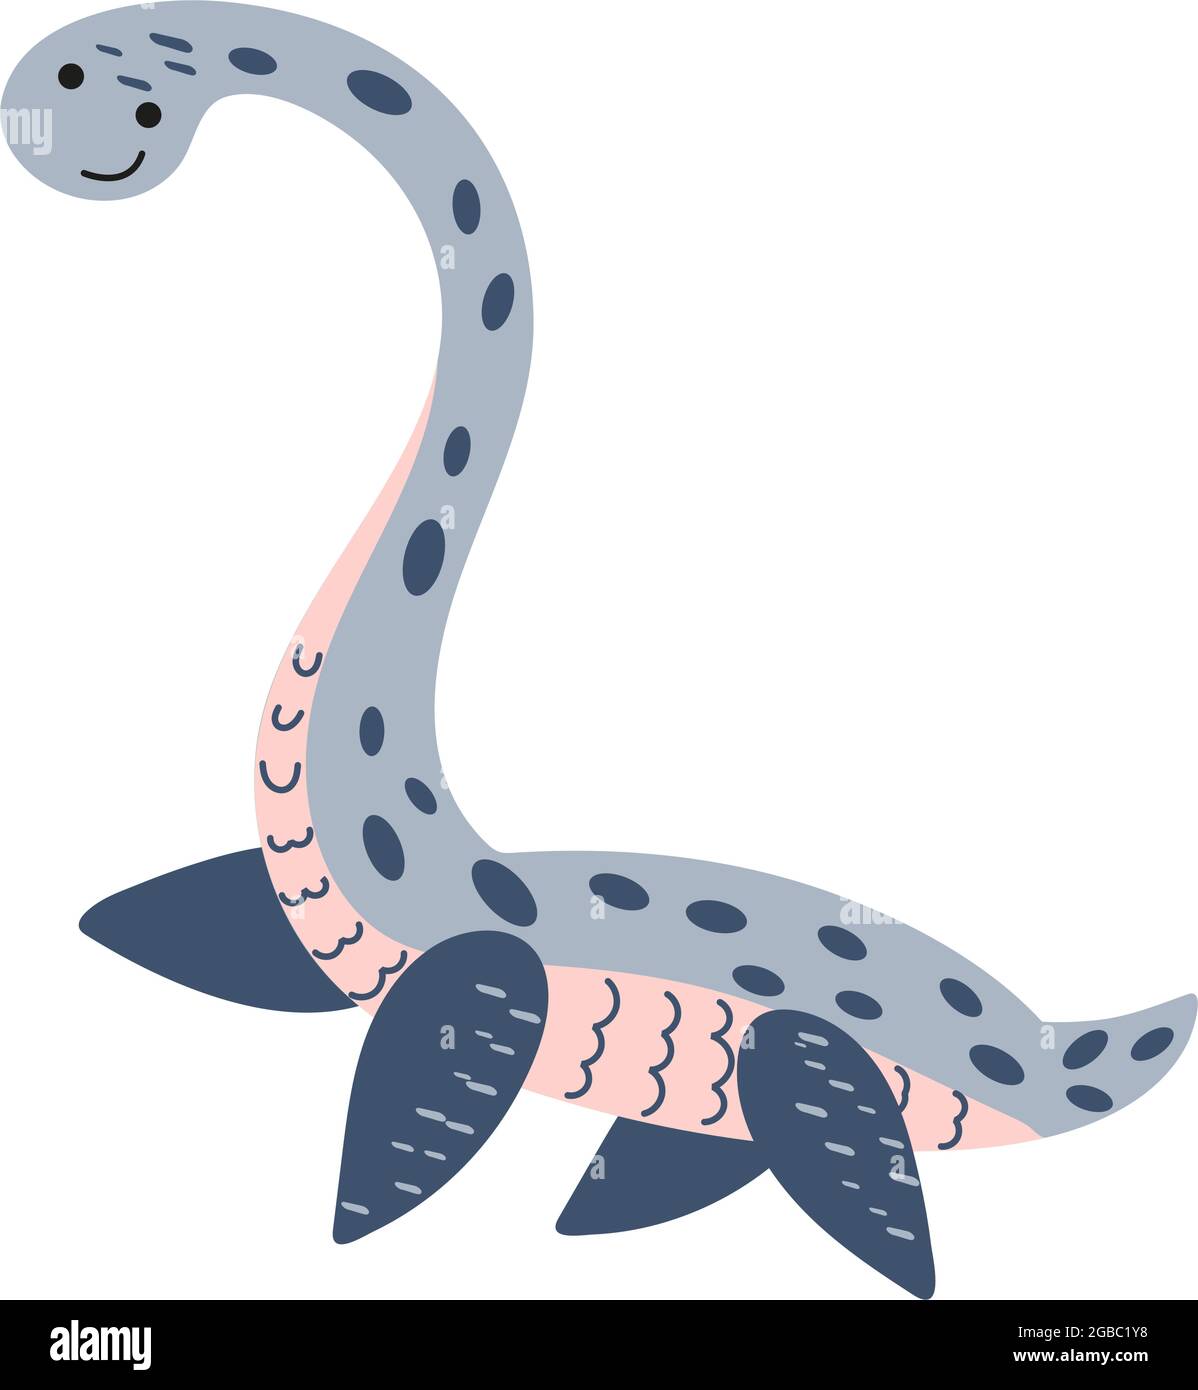 Illustrazione Dinosaur Elasmosaurus nello stile di un cartone animato.  Oggetto isolato su sfondo bianco. Animale marino del periodo Jurassico  simile t Immagine e Vettoriale - Alamy